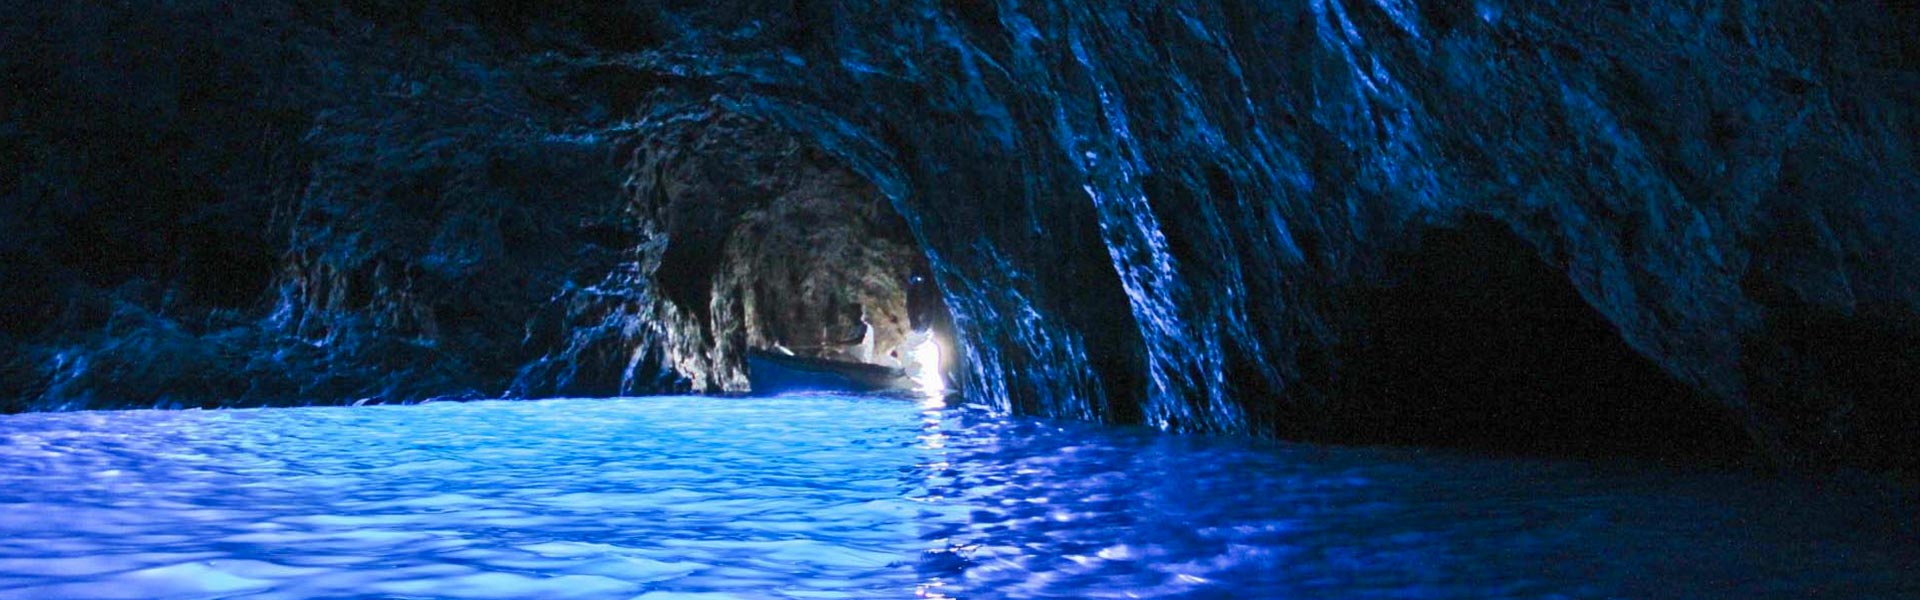 Capri Tour Blue Grotto & Swim